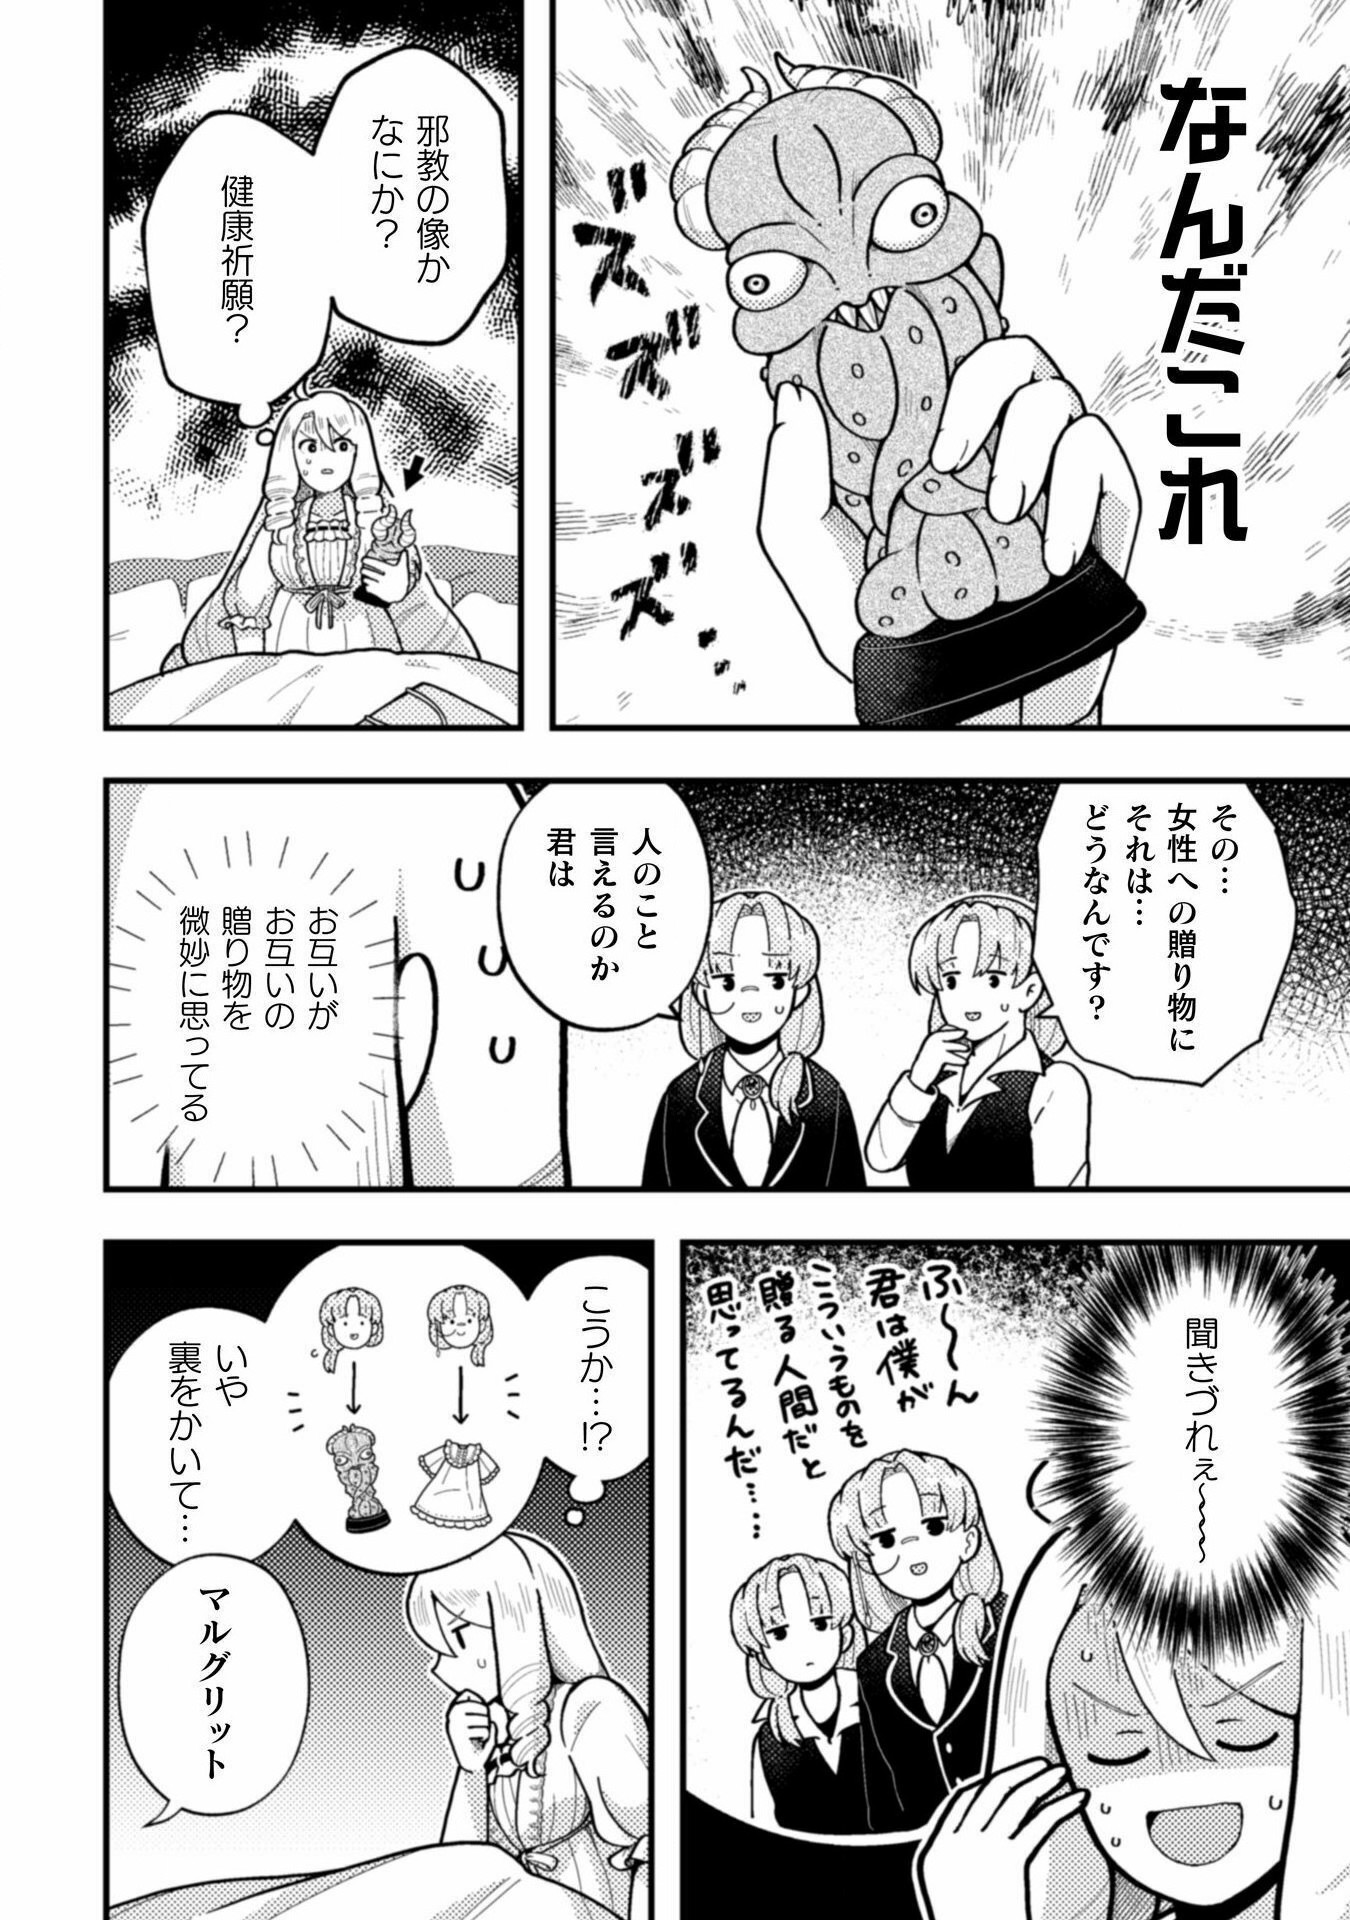 Otome Game no Akuyaku Reijou ni Tensei shitakedo Follower ga Fukyoushiteta Chisiki shikanai - Chapter 20 - Page 16